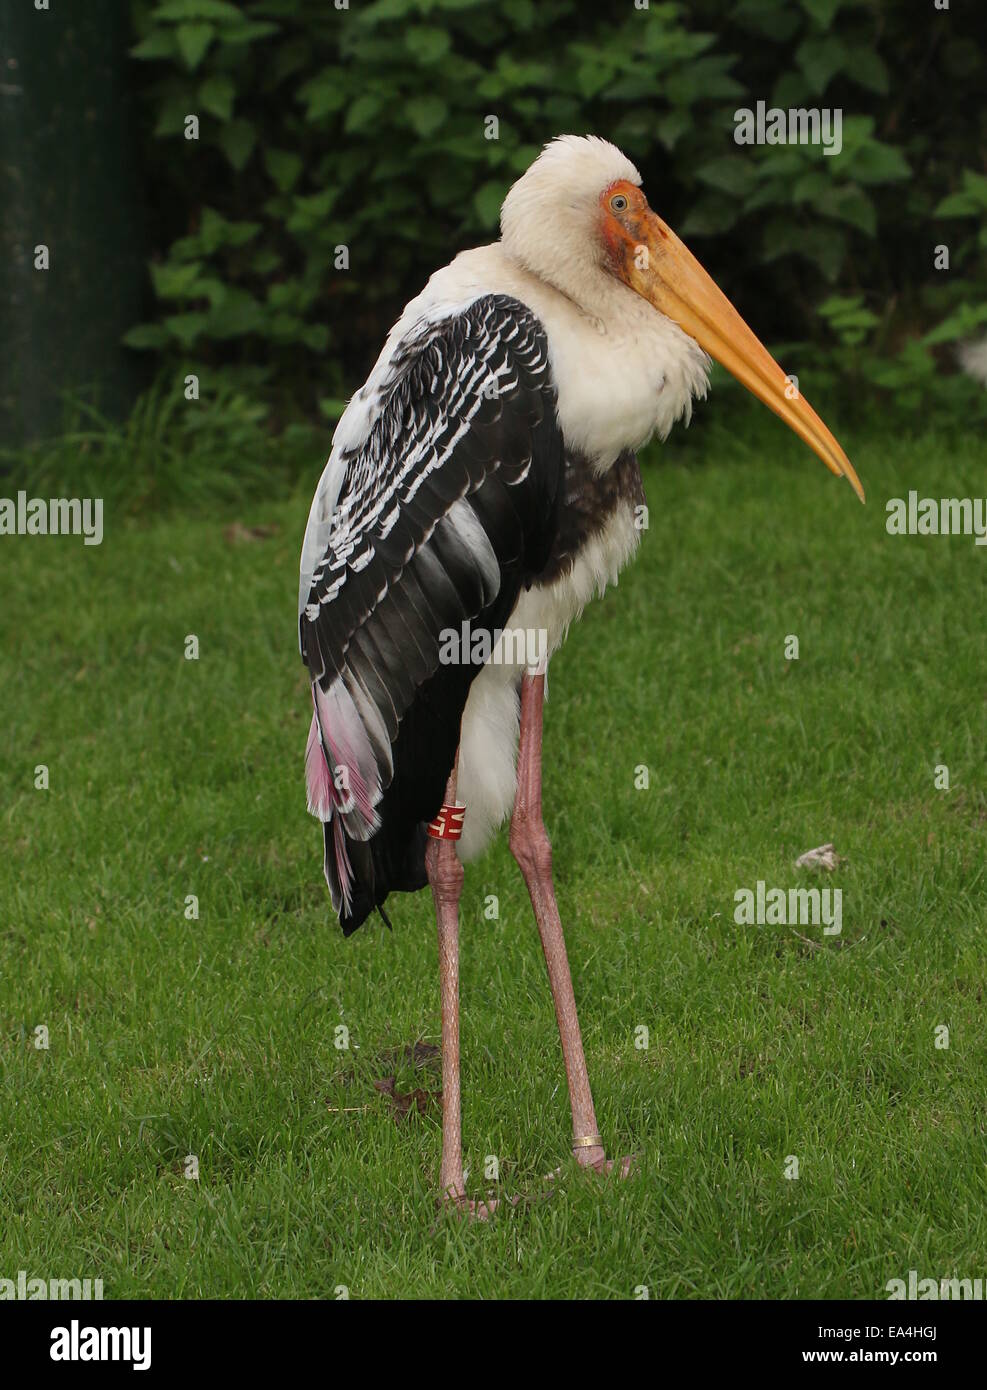 Stork (Mycteria leucocephala peint) Gros plan du haut du corps et la tête, vu de profil Banque D'Images